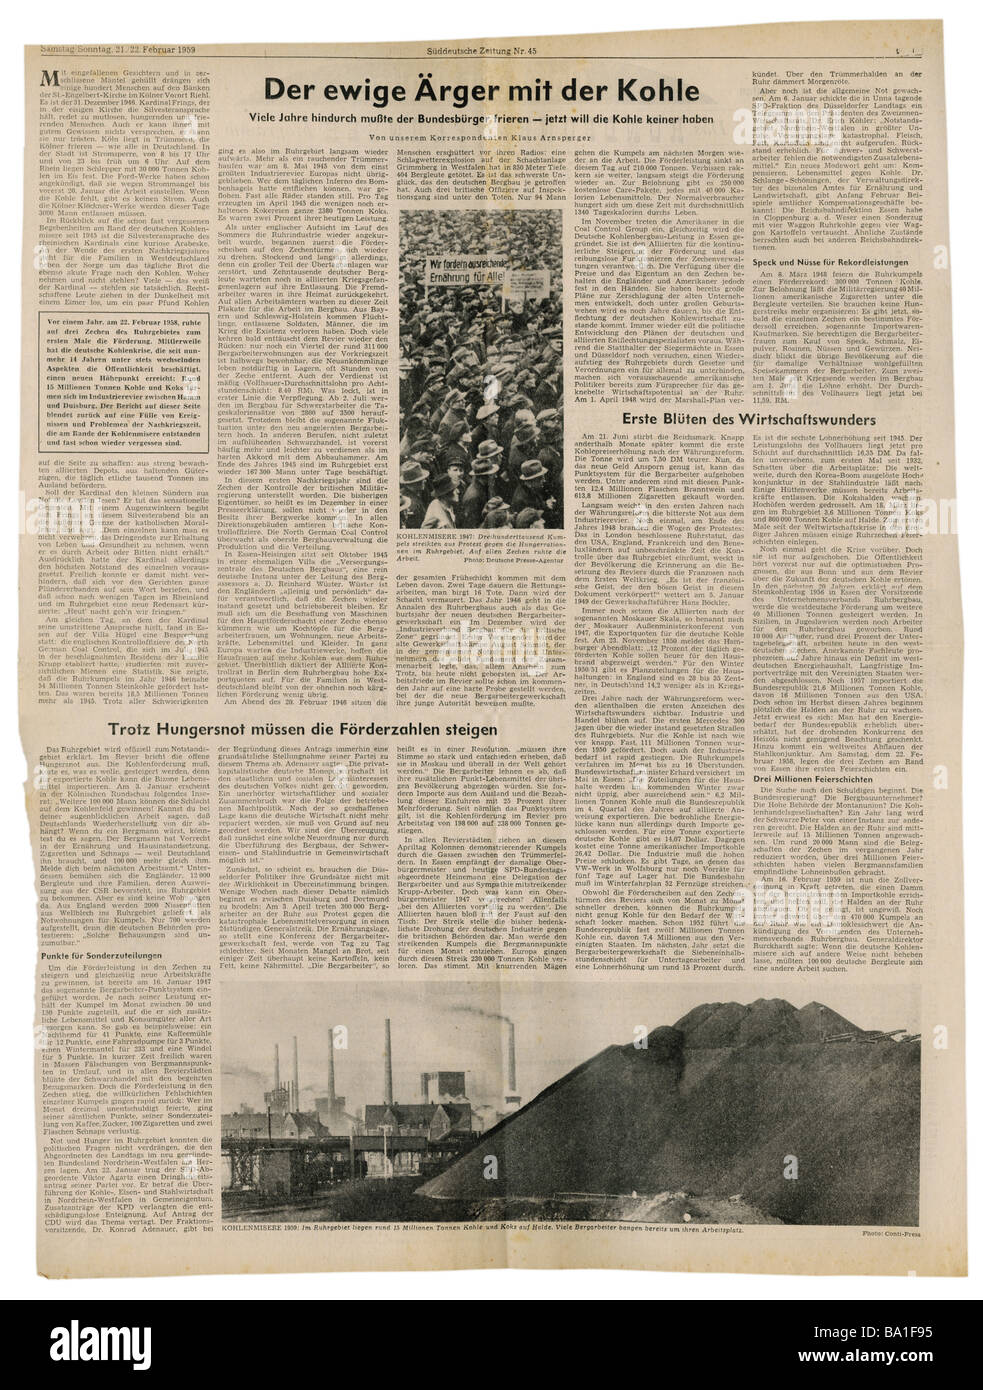 Presse/Medien, Zeitschriften, "Süddeutsche Zeitung", München, 15 Band, Nummer 45, Samstag/Sonntag 21. / 22.2.1959, Artikel, Probleme mit der Kohleförderung, Stockfoto